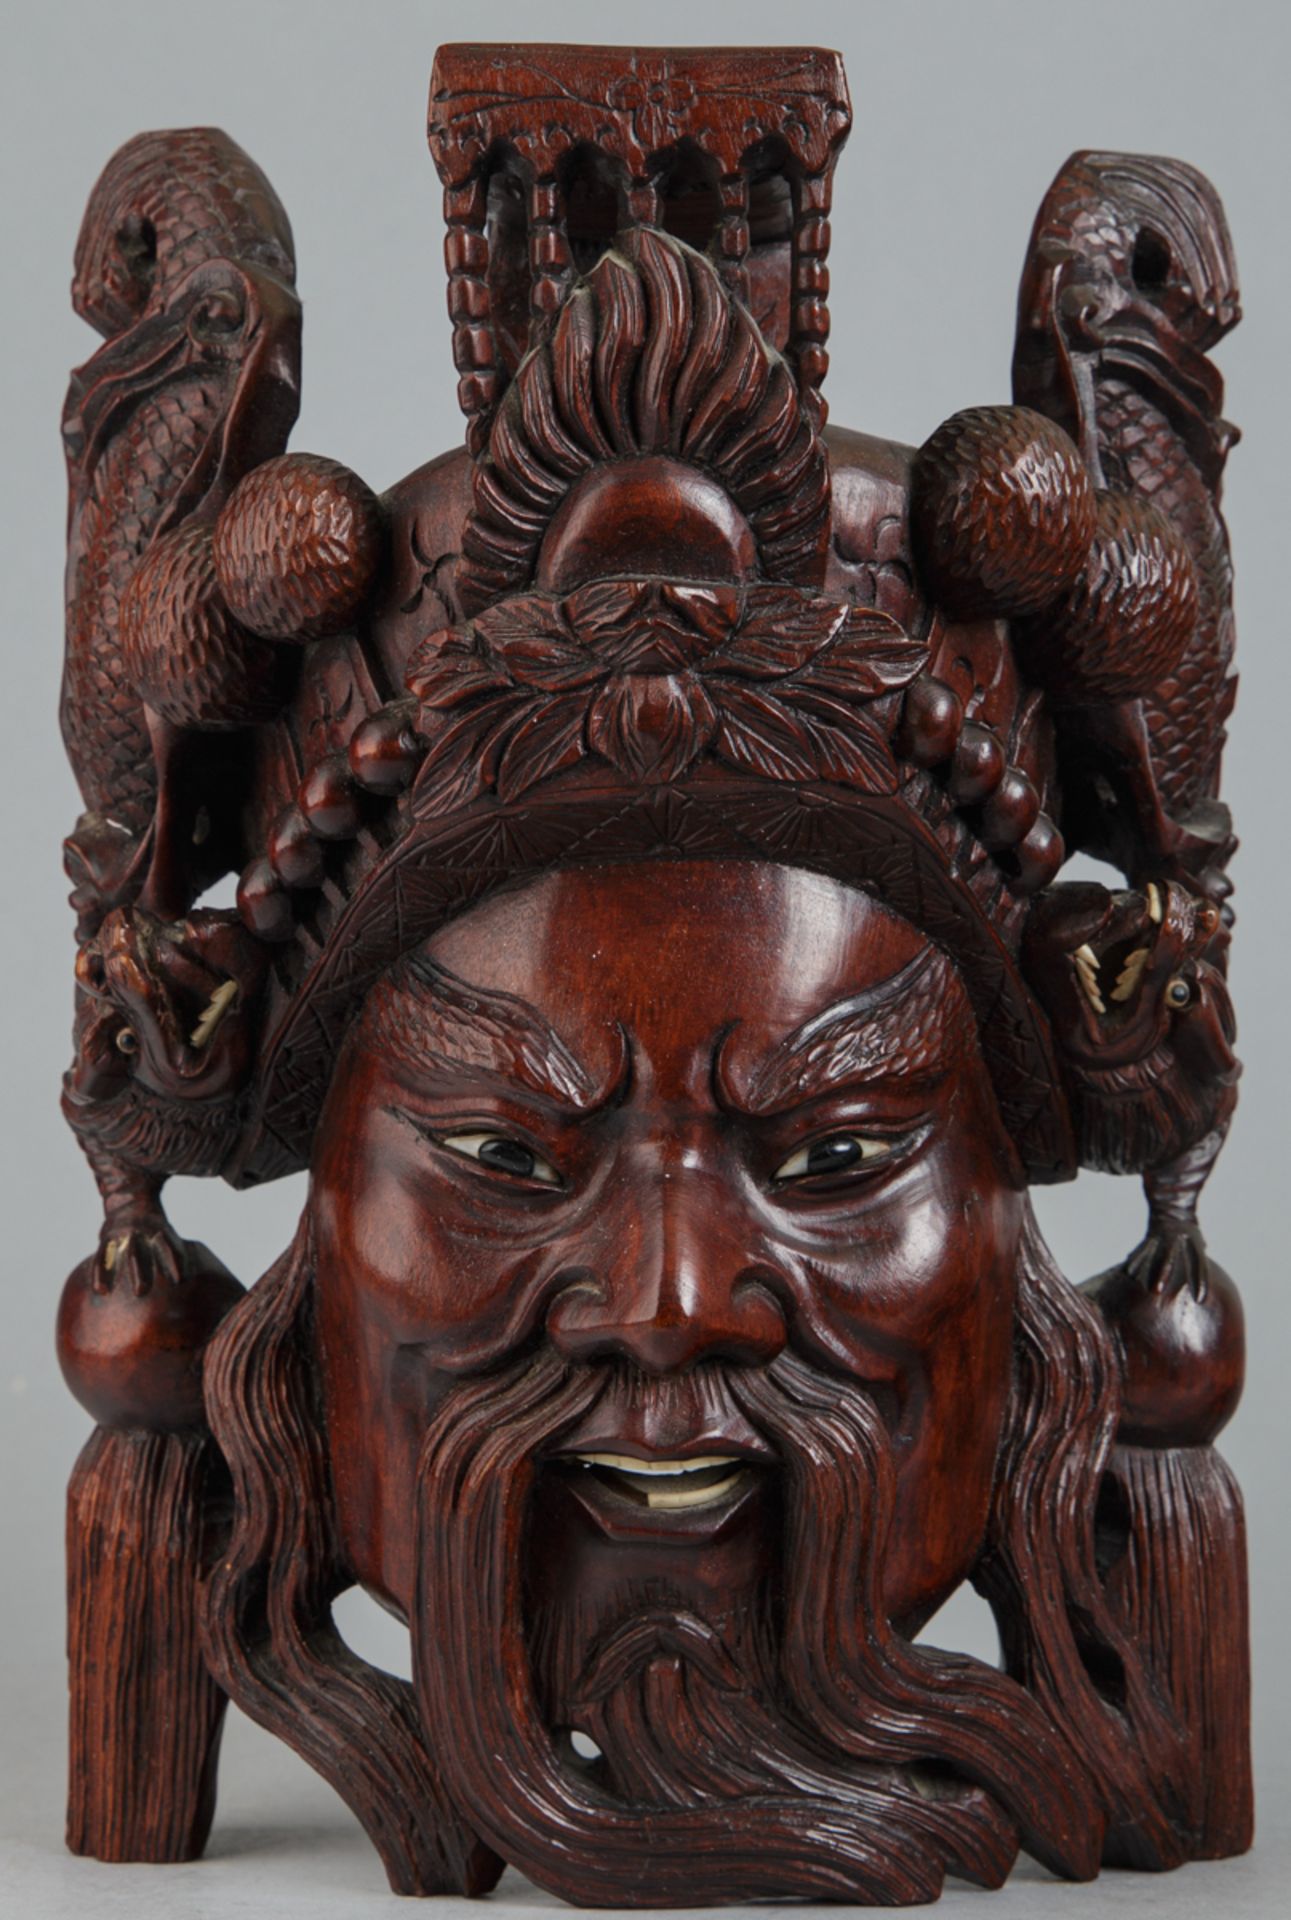 Maske der Daoistischen Gottheit 'Long-Wang' (Drachen-König), China, M. 20. Jh.